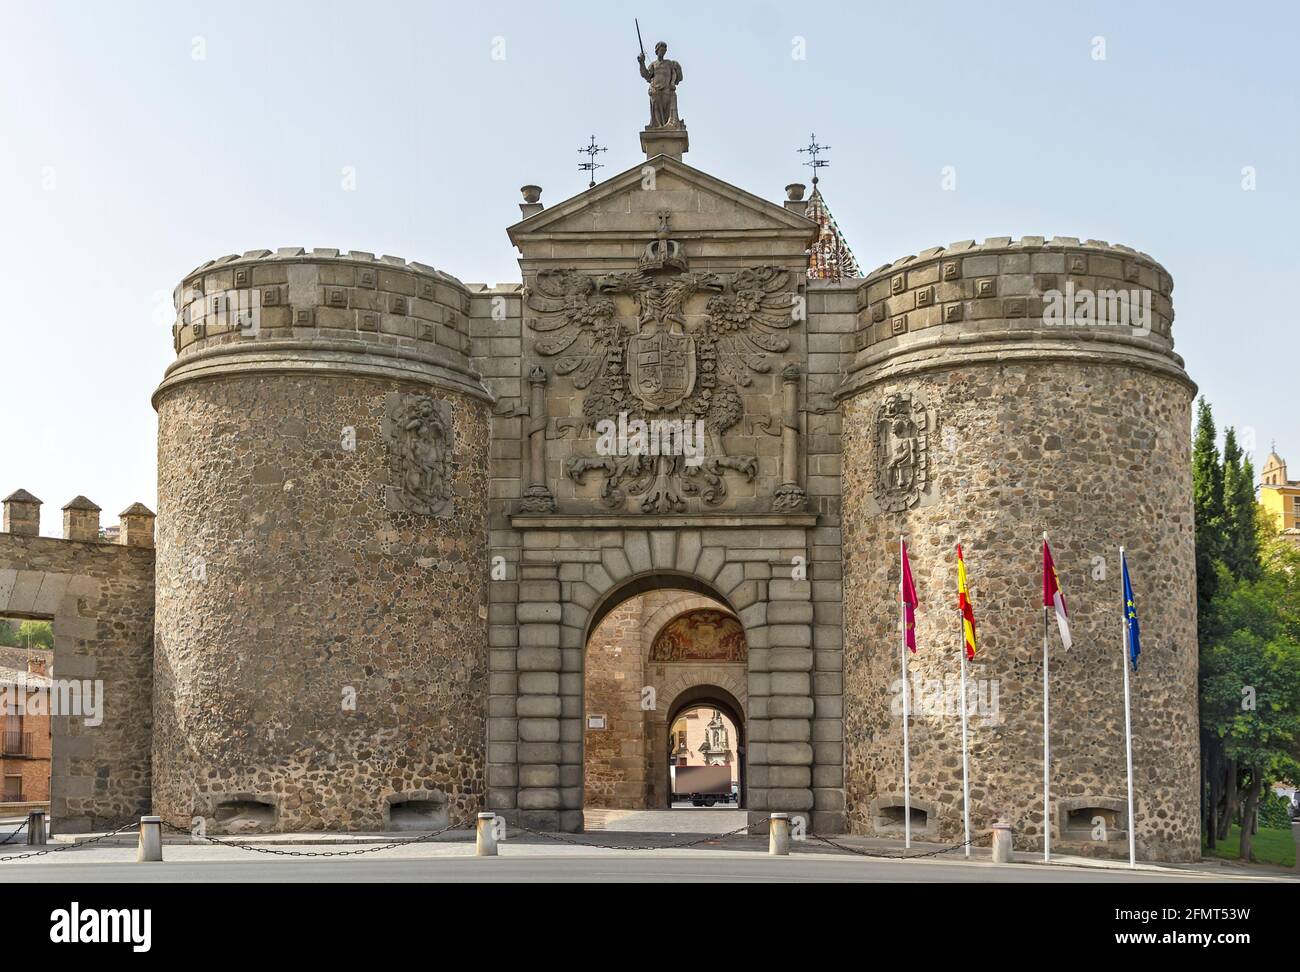 Puerta Nueva de Bisagra, nueva bisagra de puerta, es una puerta monumental  situada en las murallas de Toledo, España Fotografía de stock - Alamy